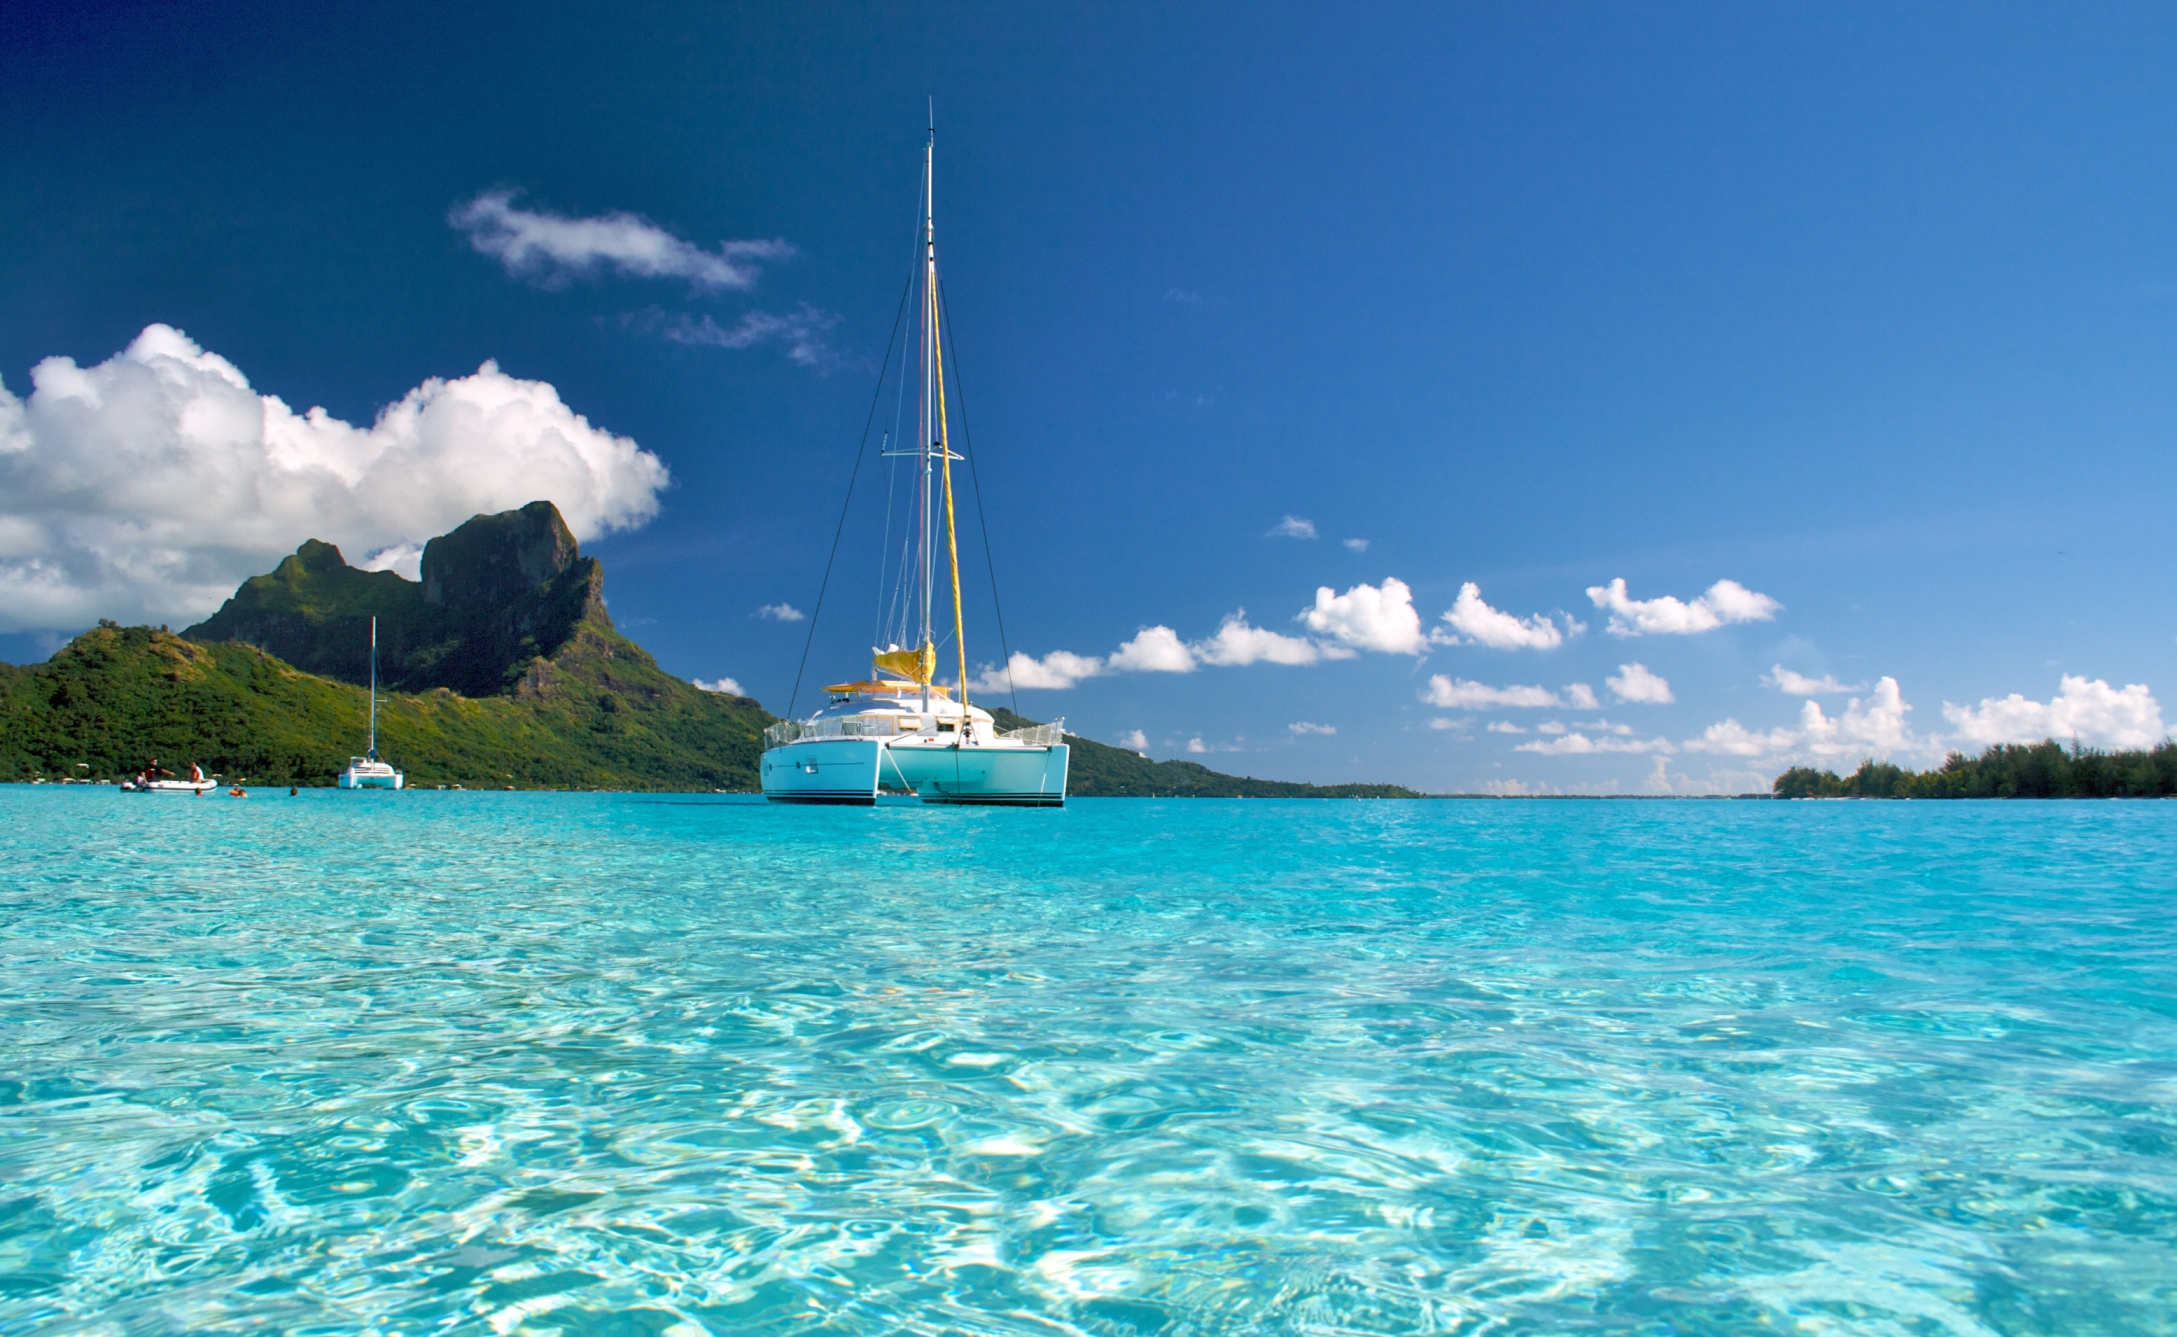 Tourisme en Outre-mer: Des catamarans électriques dans le lagon polynésien